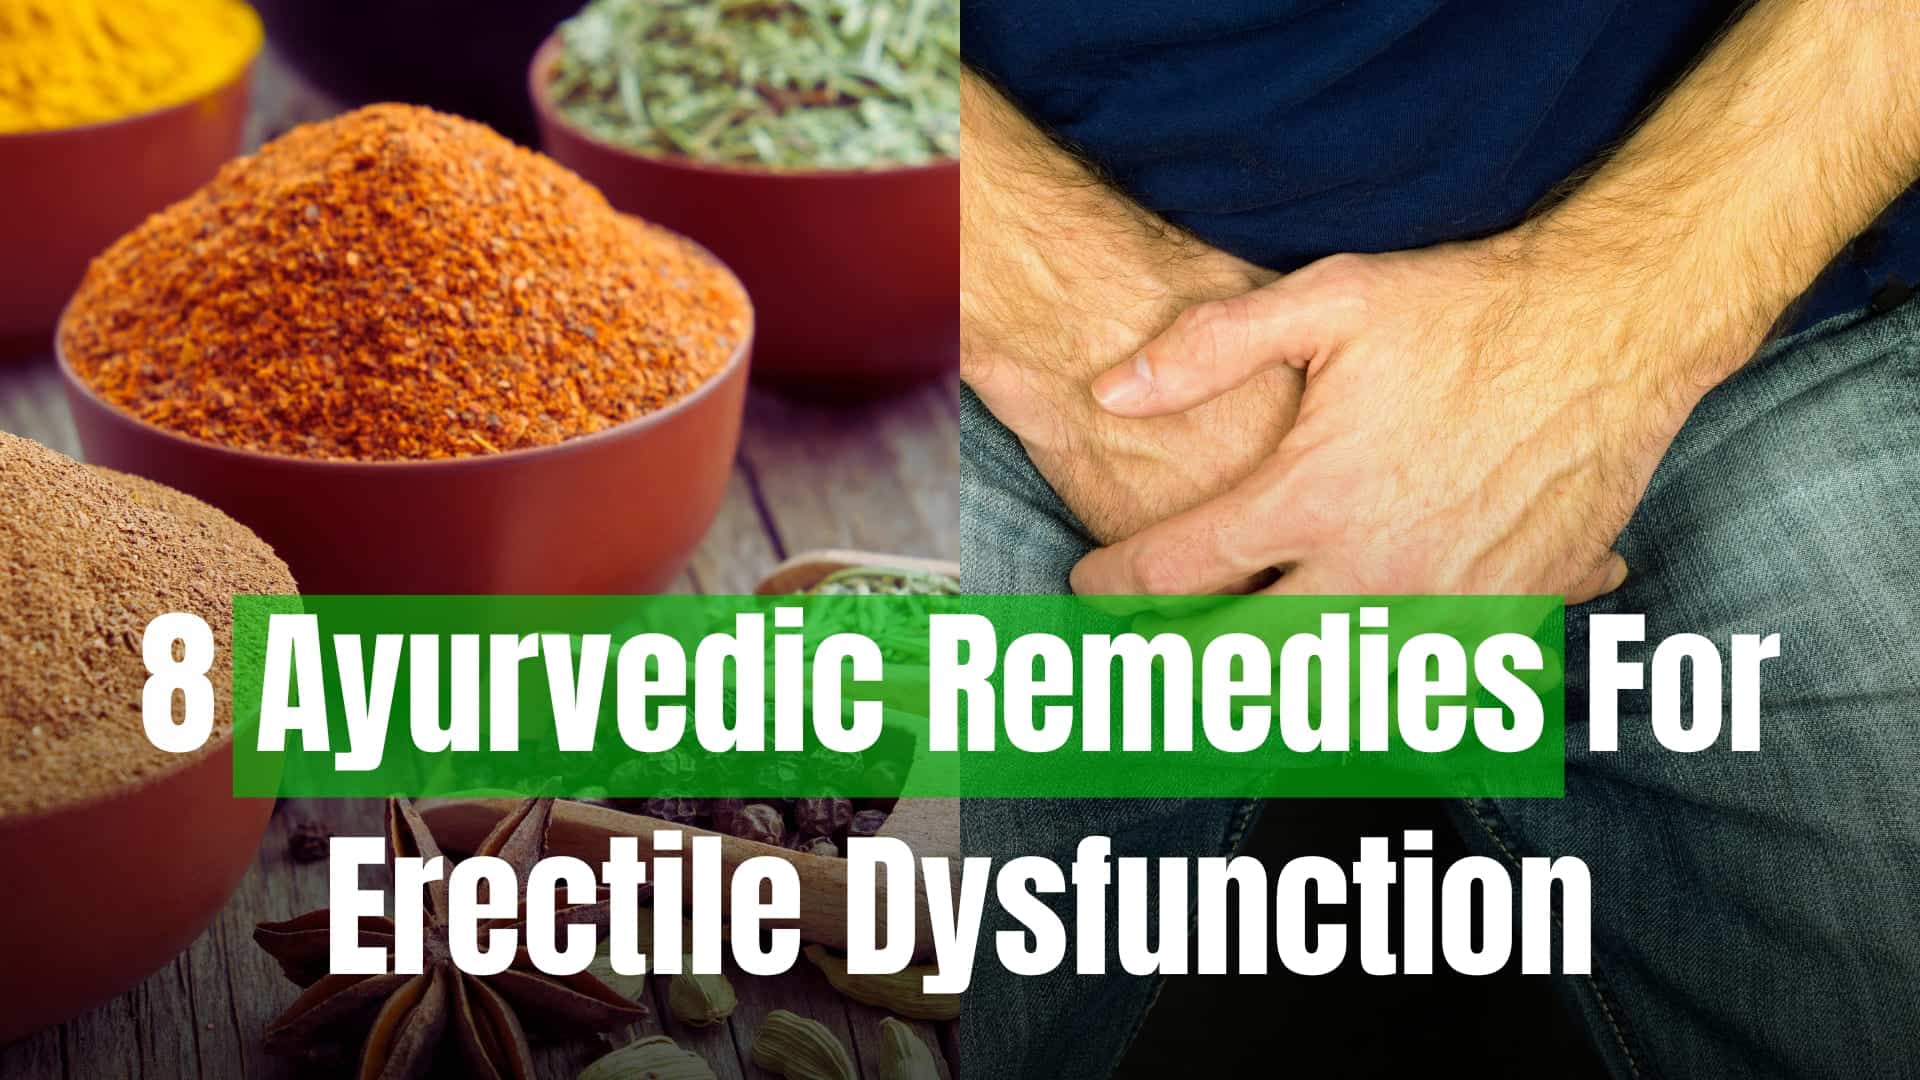 * Ayurvedic Remedies For Erectile Dysfunction